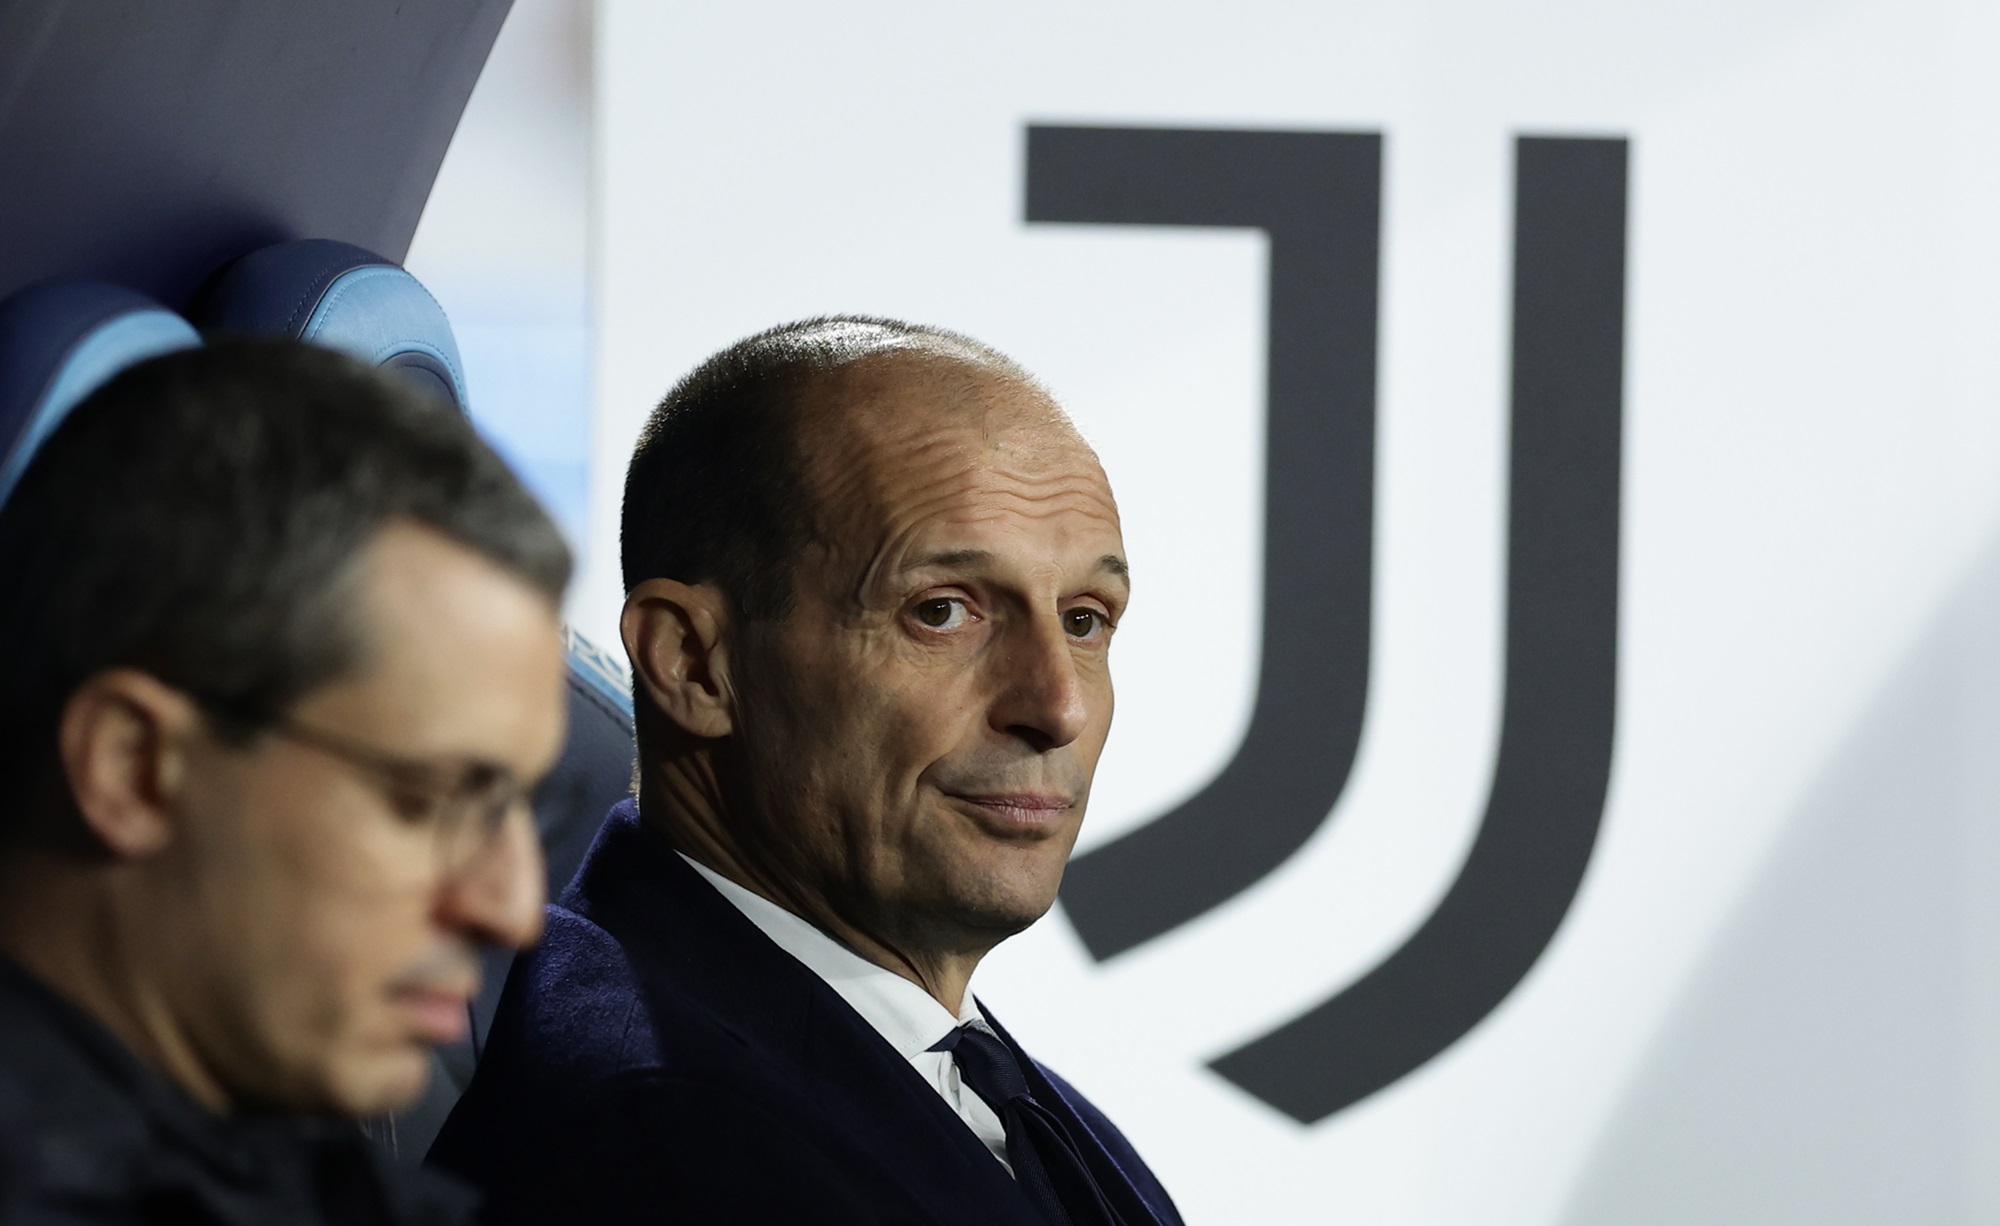 Napoli-Juventus 2-1, Allegri: "Futuro? Non esiste un problema legato a me,  sono felice qua"